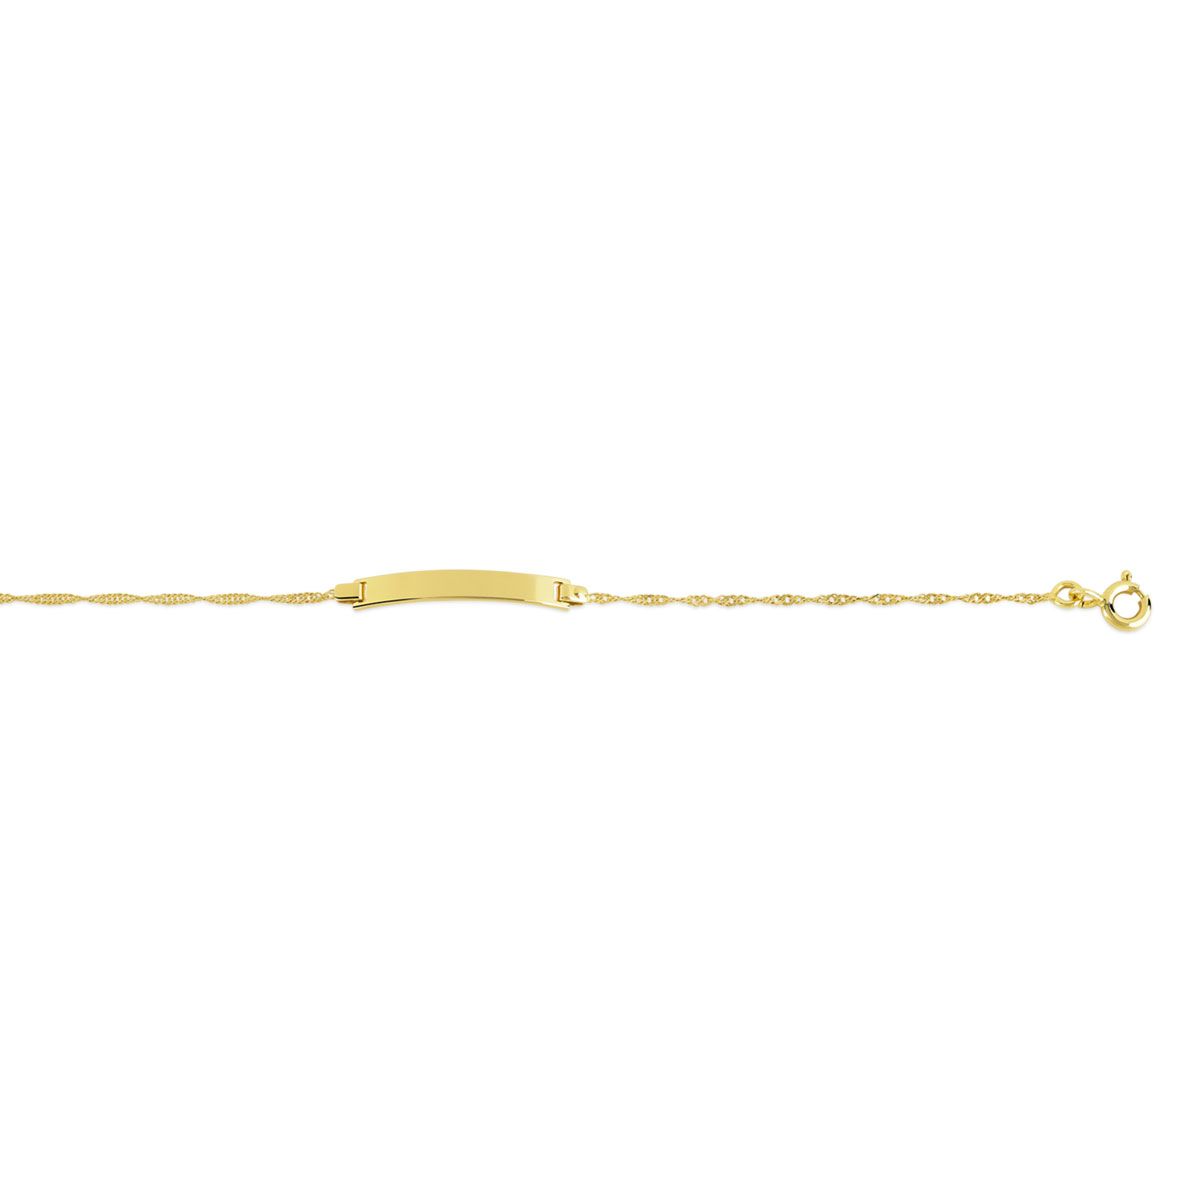 Bracelet identité or 375 jaune maille torsadée personnalisable 14 cm